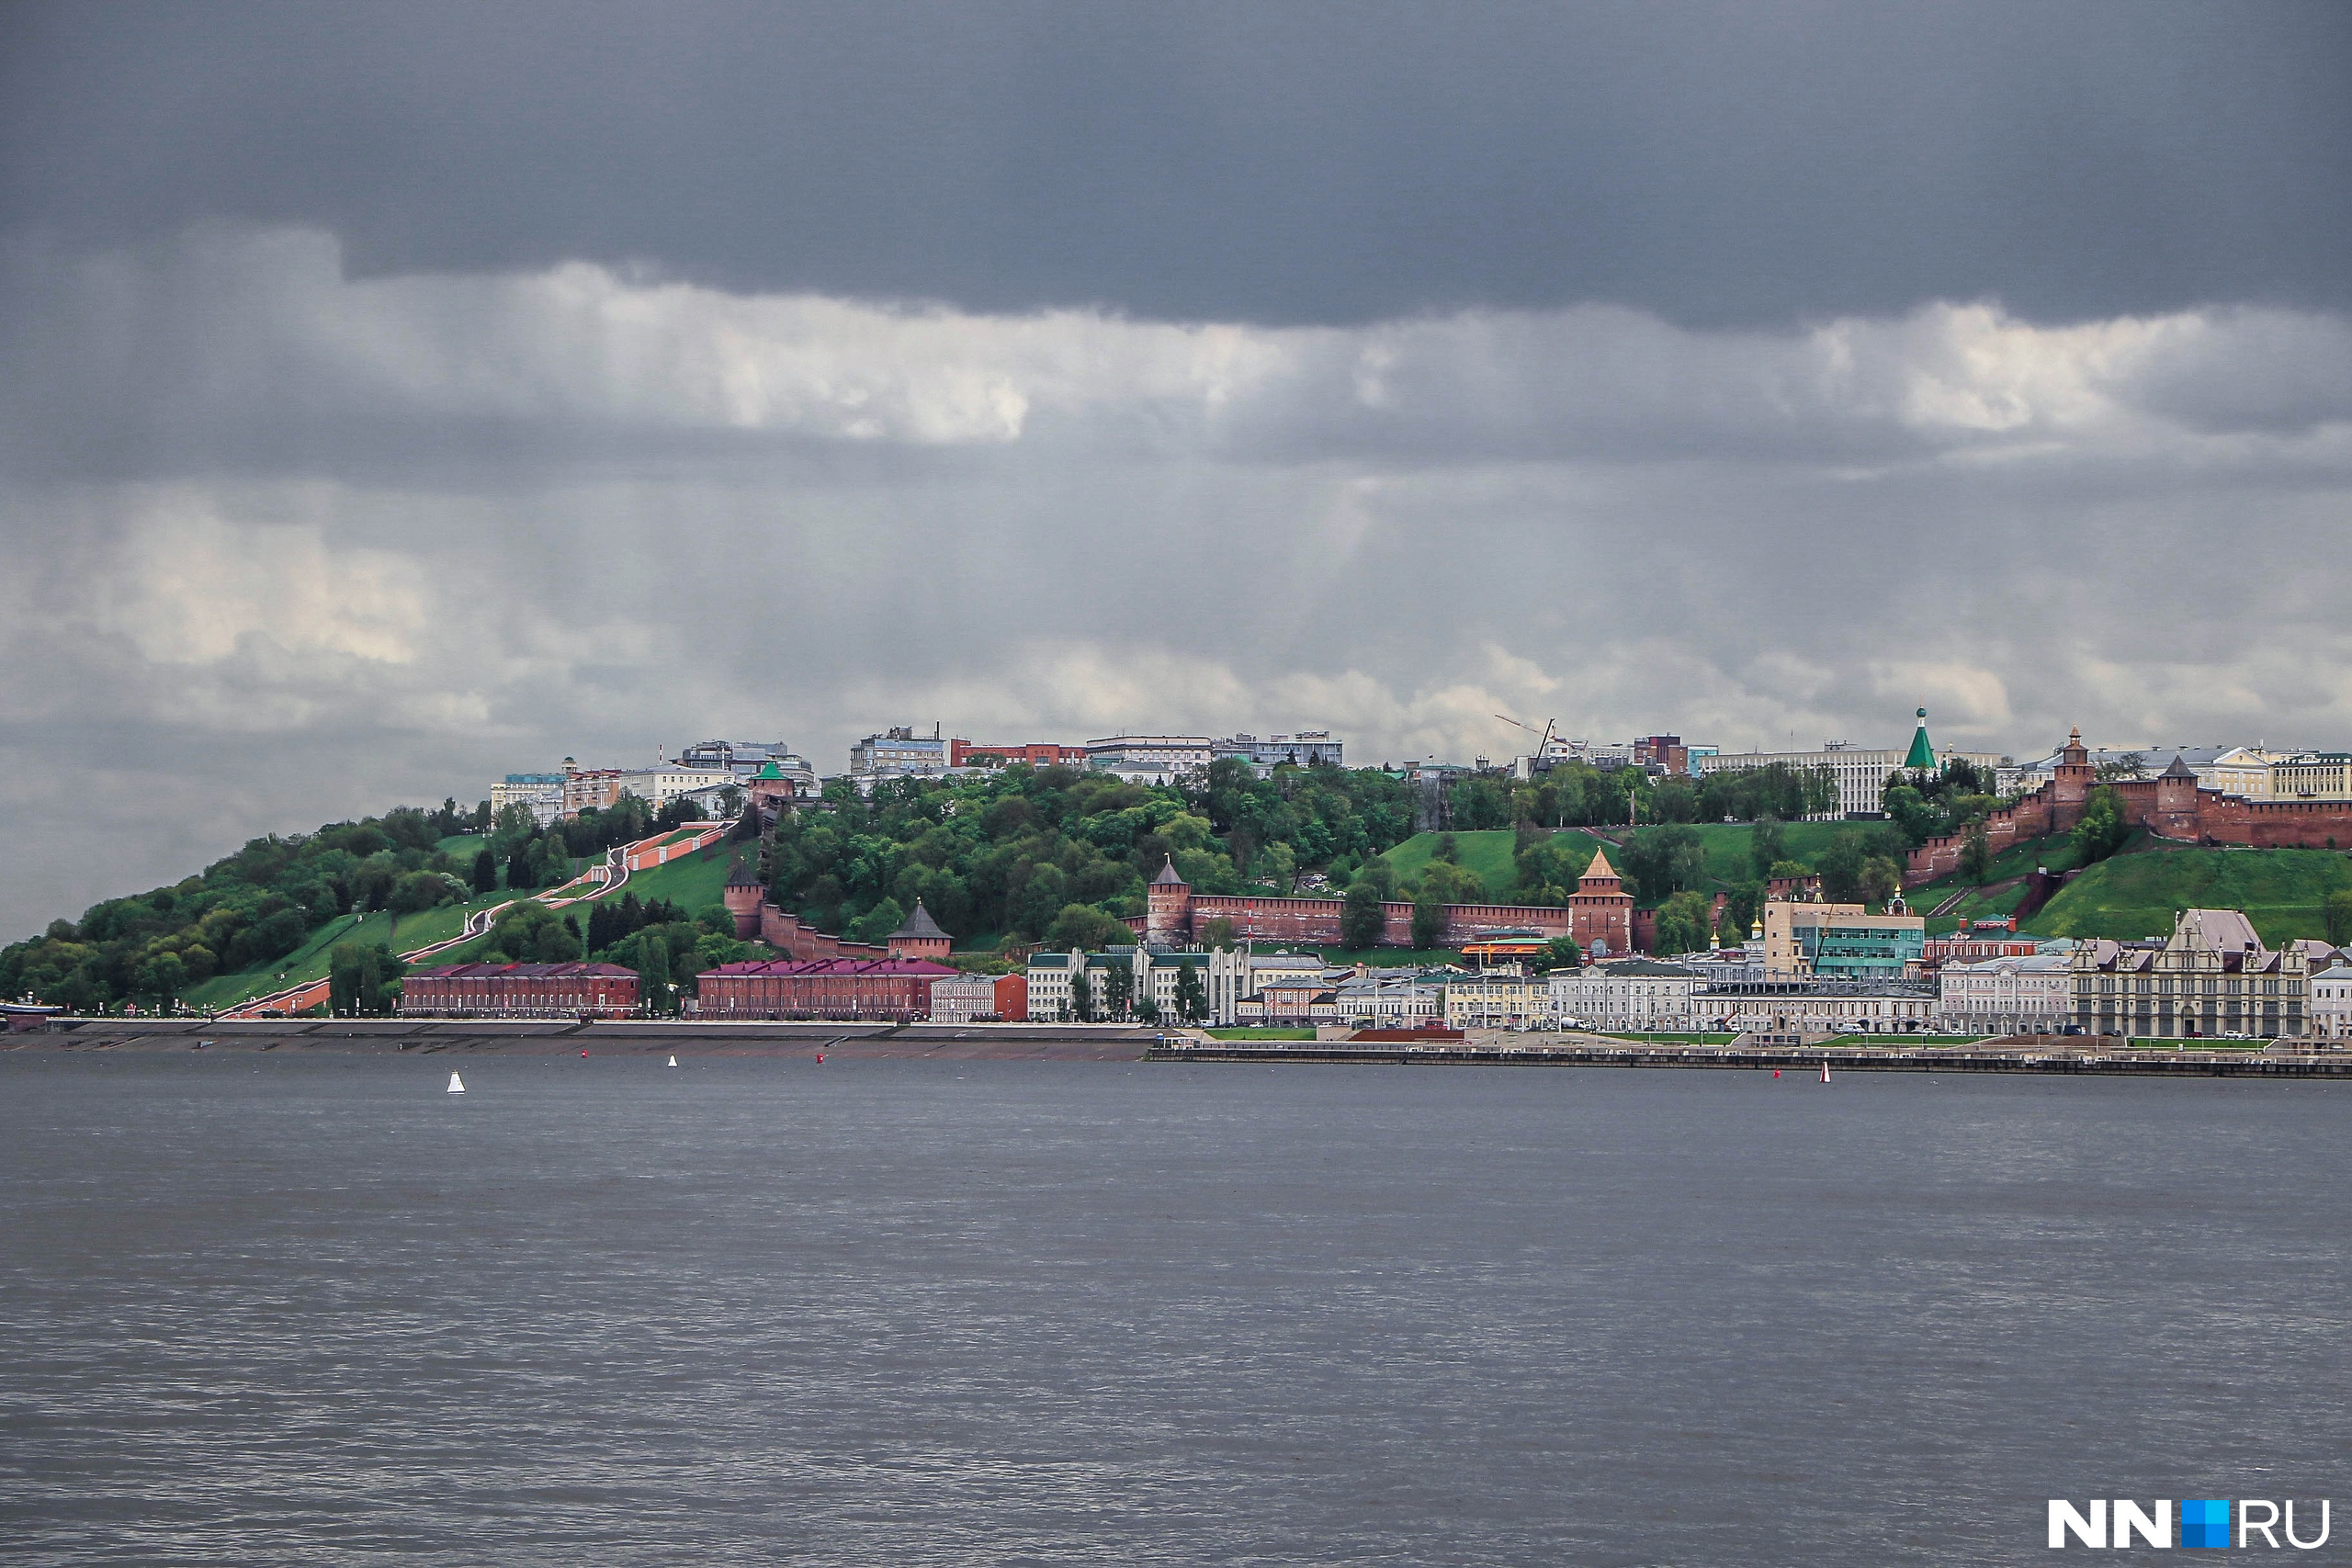 Ещё одна съёмка была в нижней части города — поэтому вот вам кадр, где дожди льют над центром Нижнего Новгорода